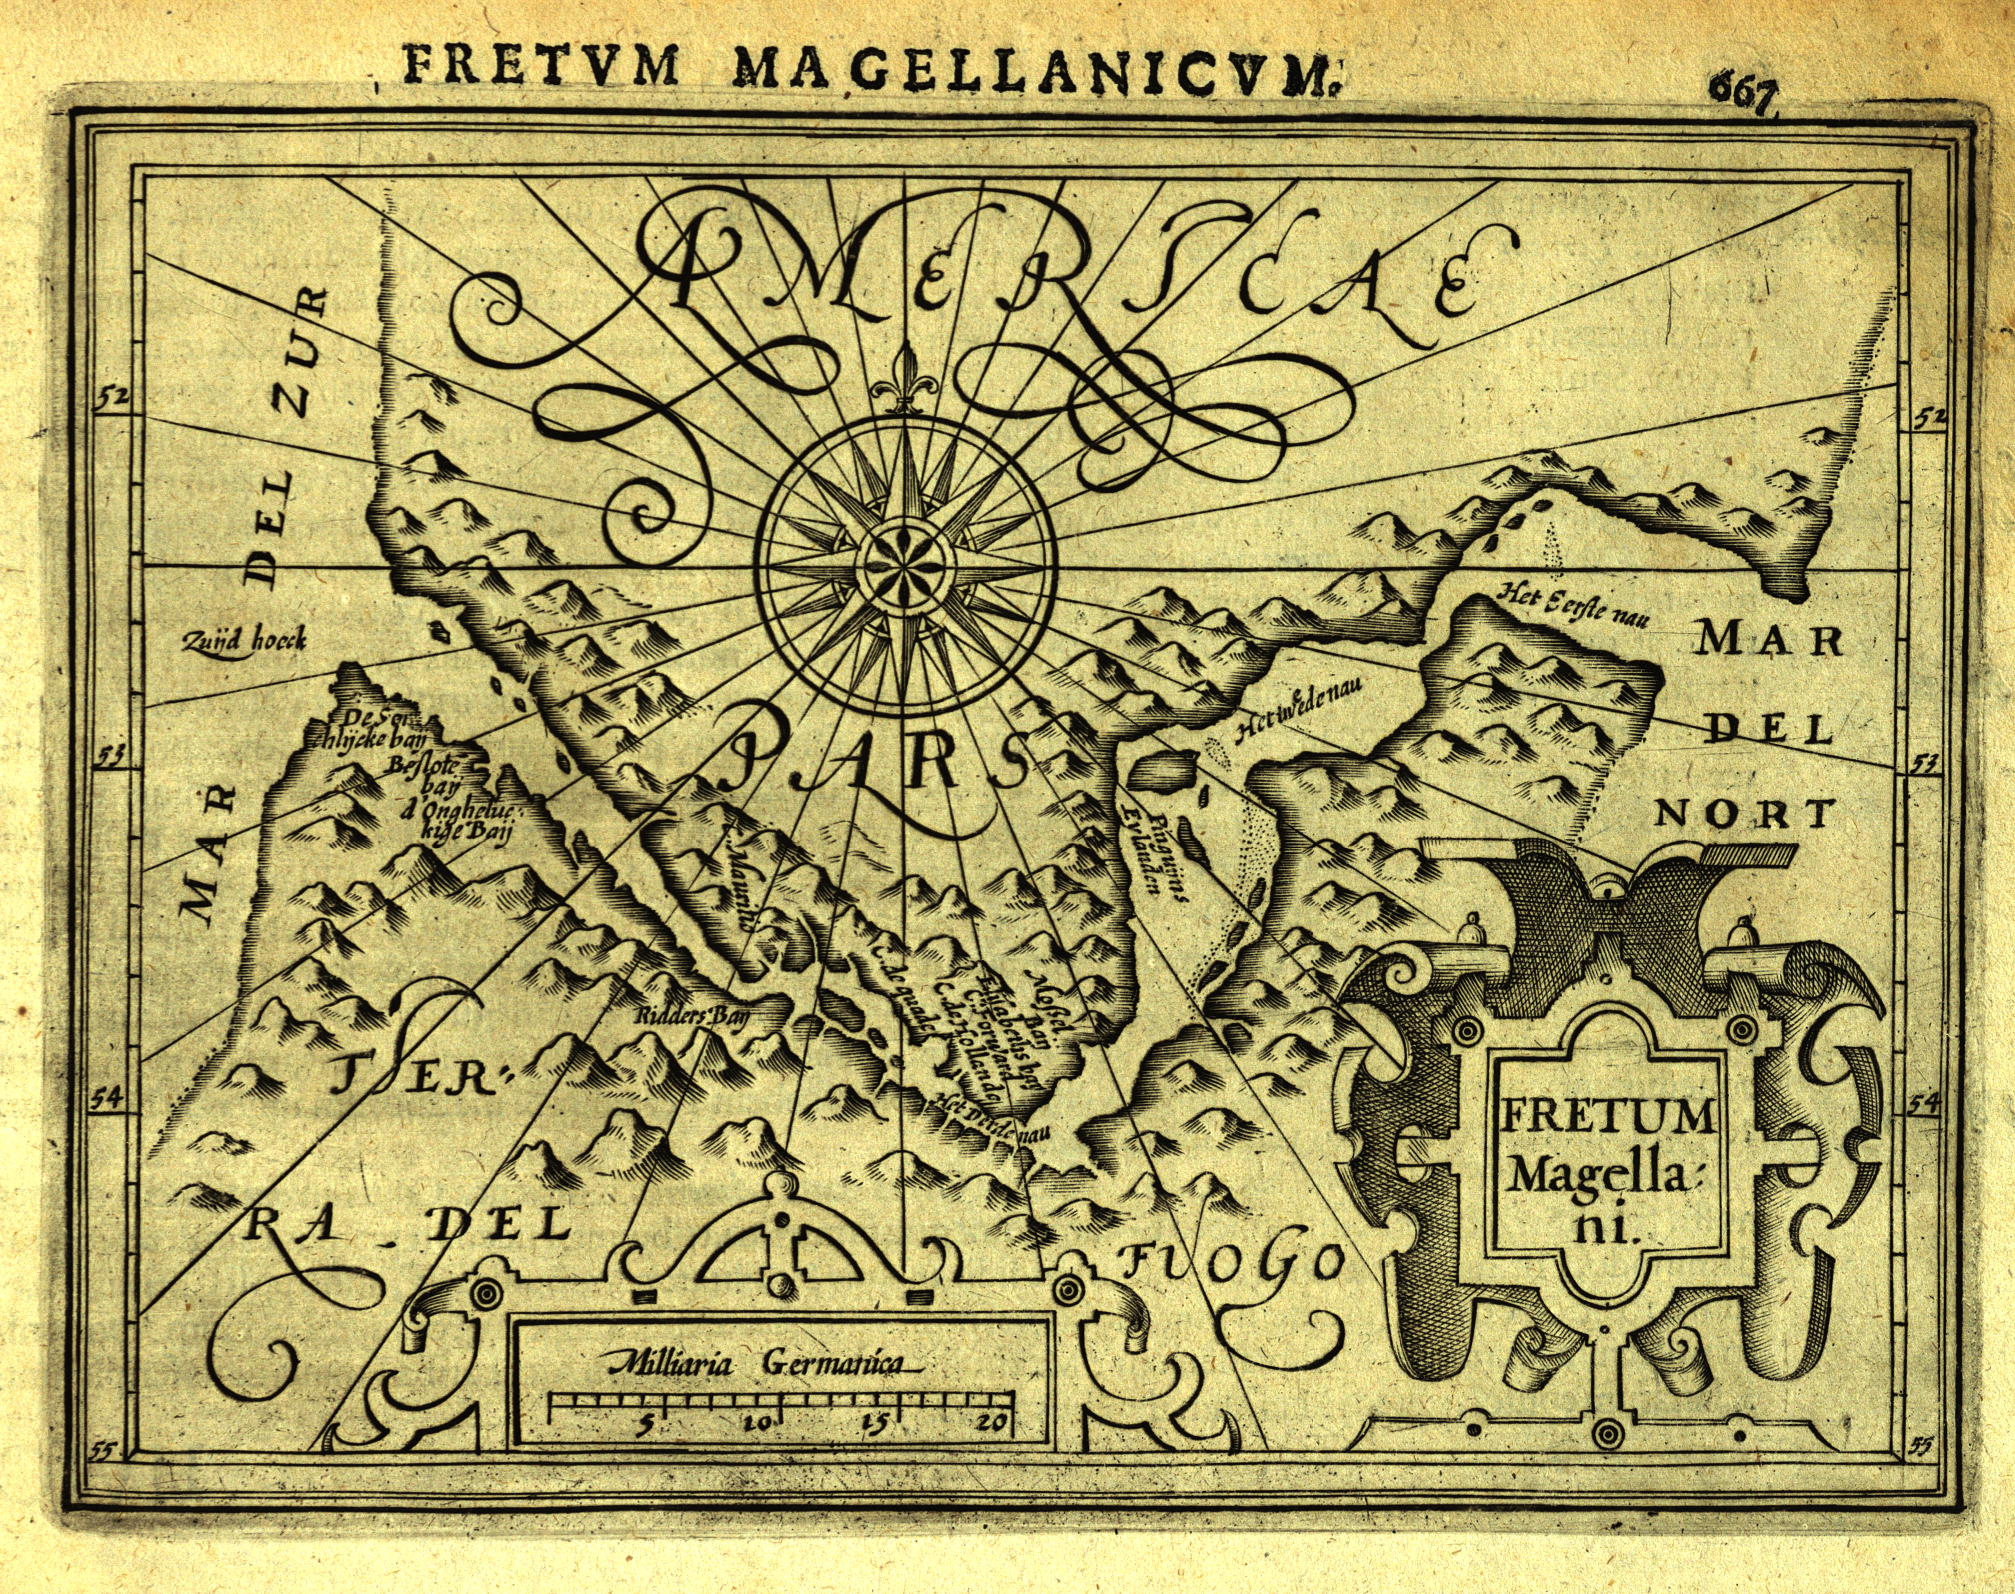 Fretum Magellanicum. Aus: Gerhard Mercator: Atlas minor. - Amsterdam: Hondius, 1610. - Signatur: 67 A 5087 RH.